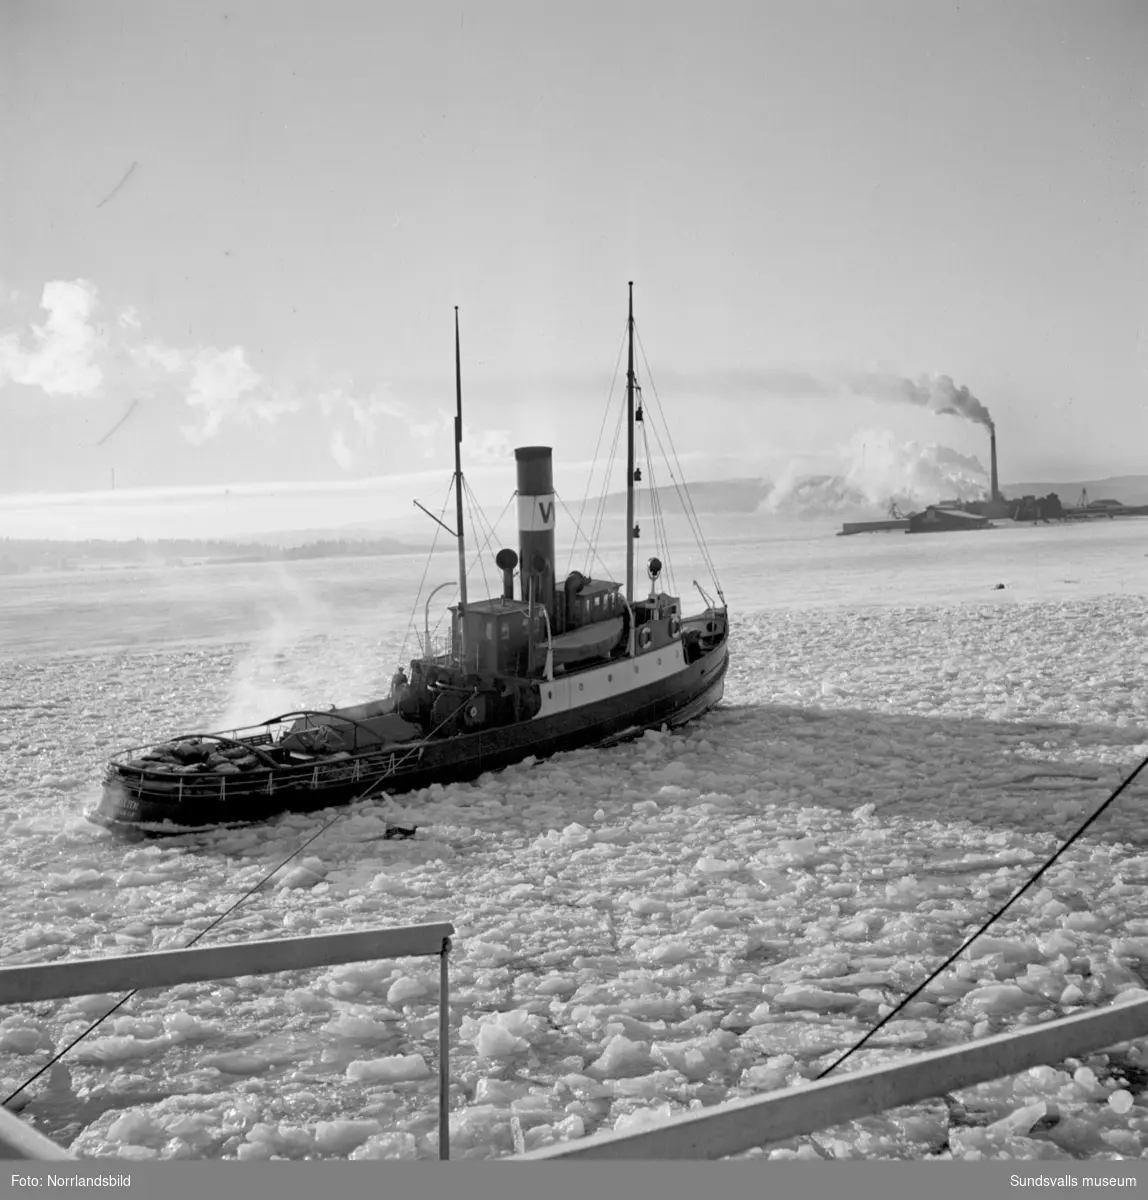 En grupp bilder med lotsarna och lotsbåten Pehr Hellzen i Vivstavarv och Fagervik.